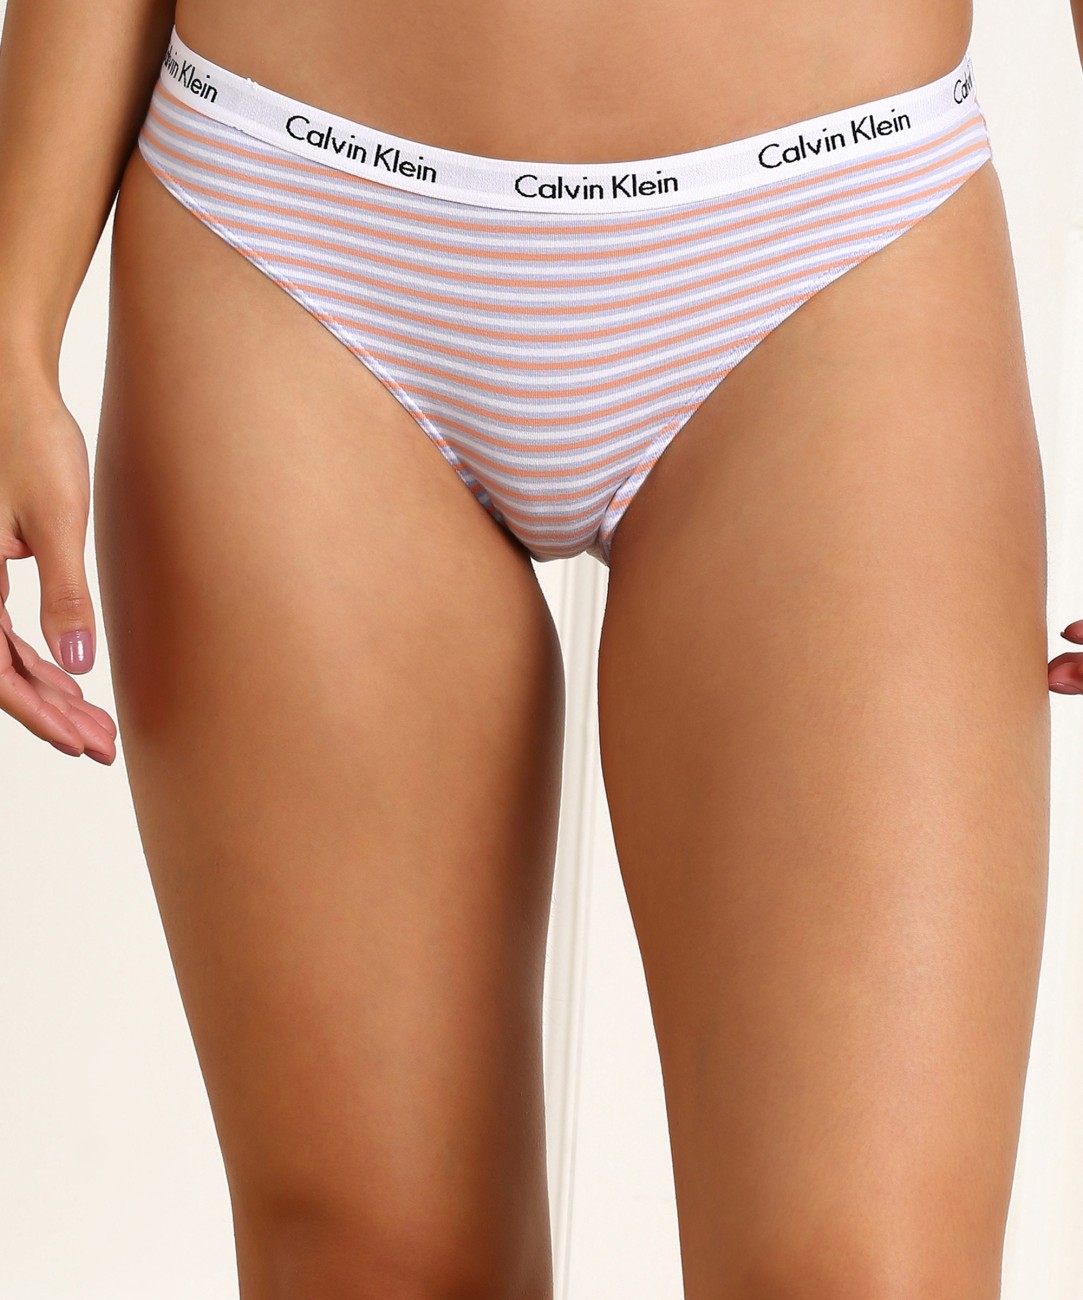 Calvin Klein Underwear Women Bikini Multicolor Panty